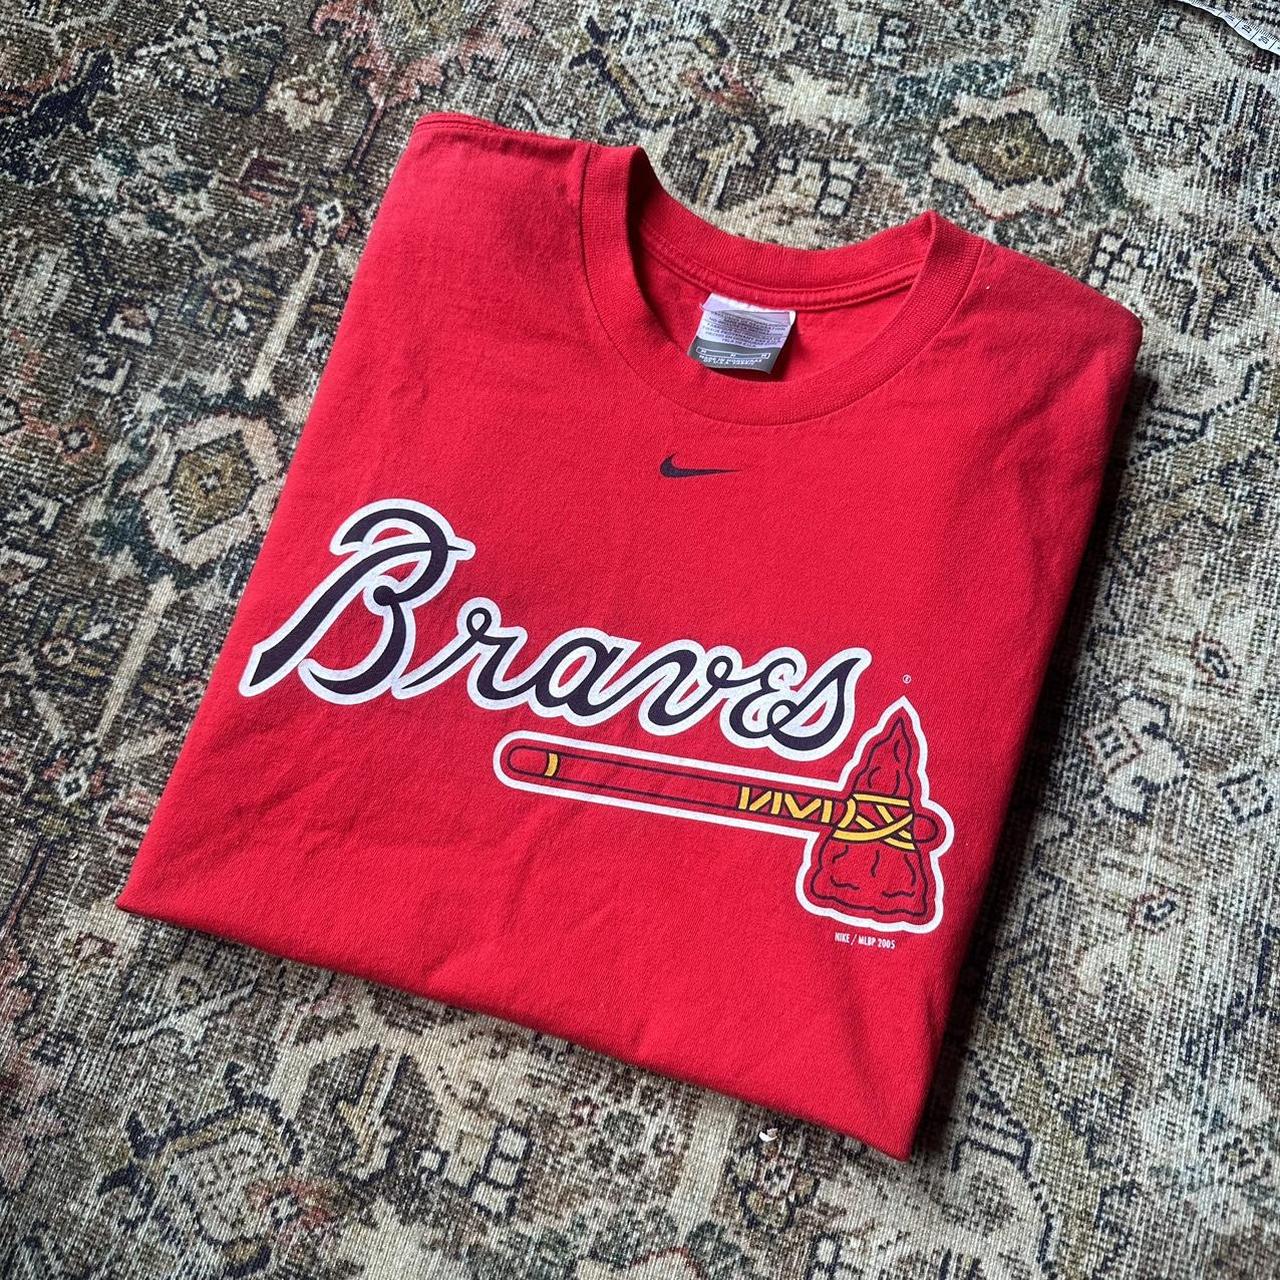 Nike Braves Tshirt sz m  Braves tshirt, T shirt, Nike